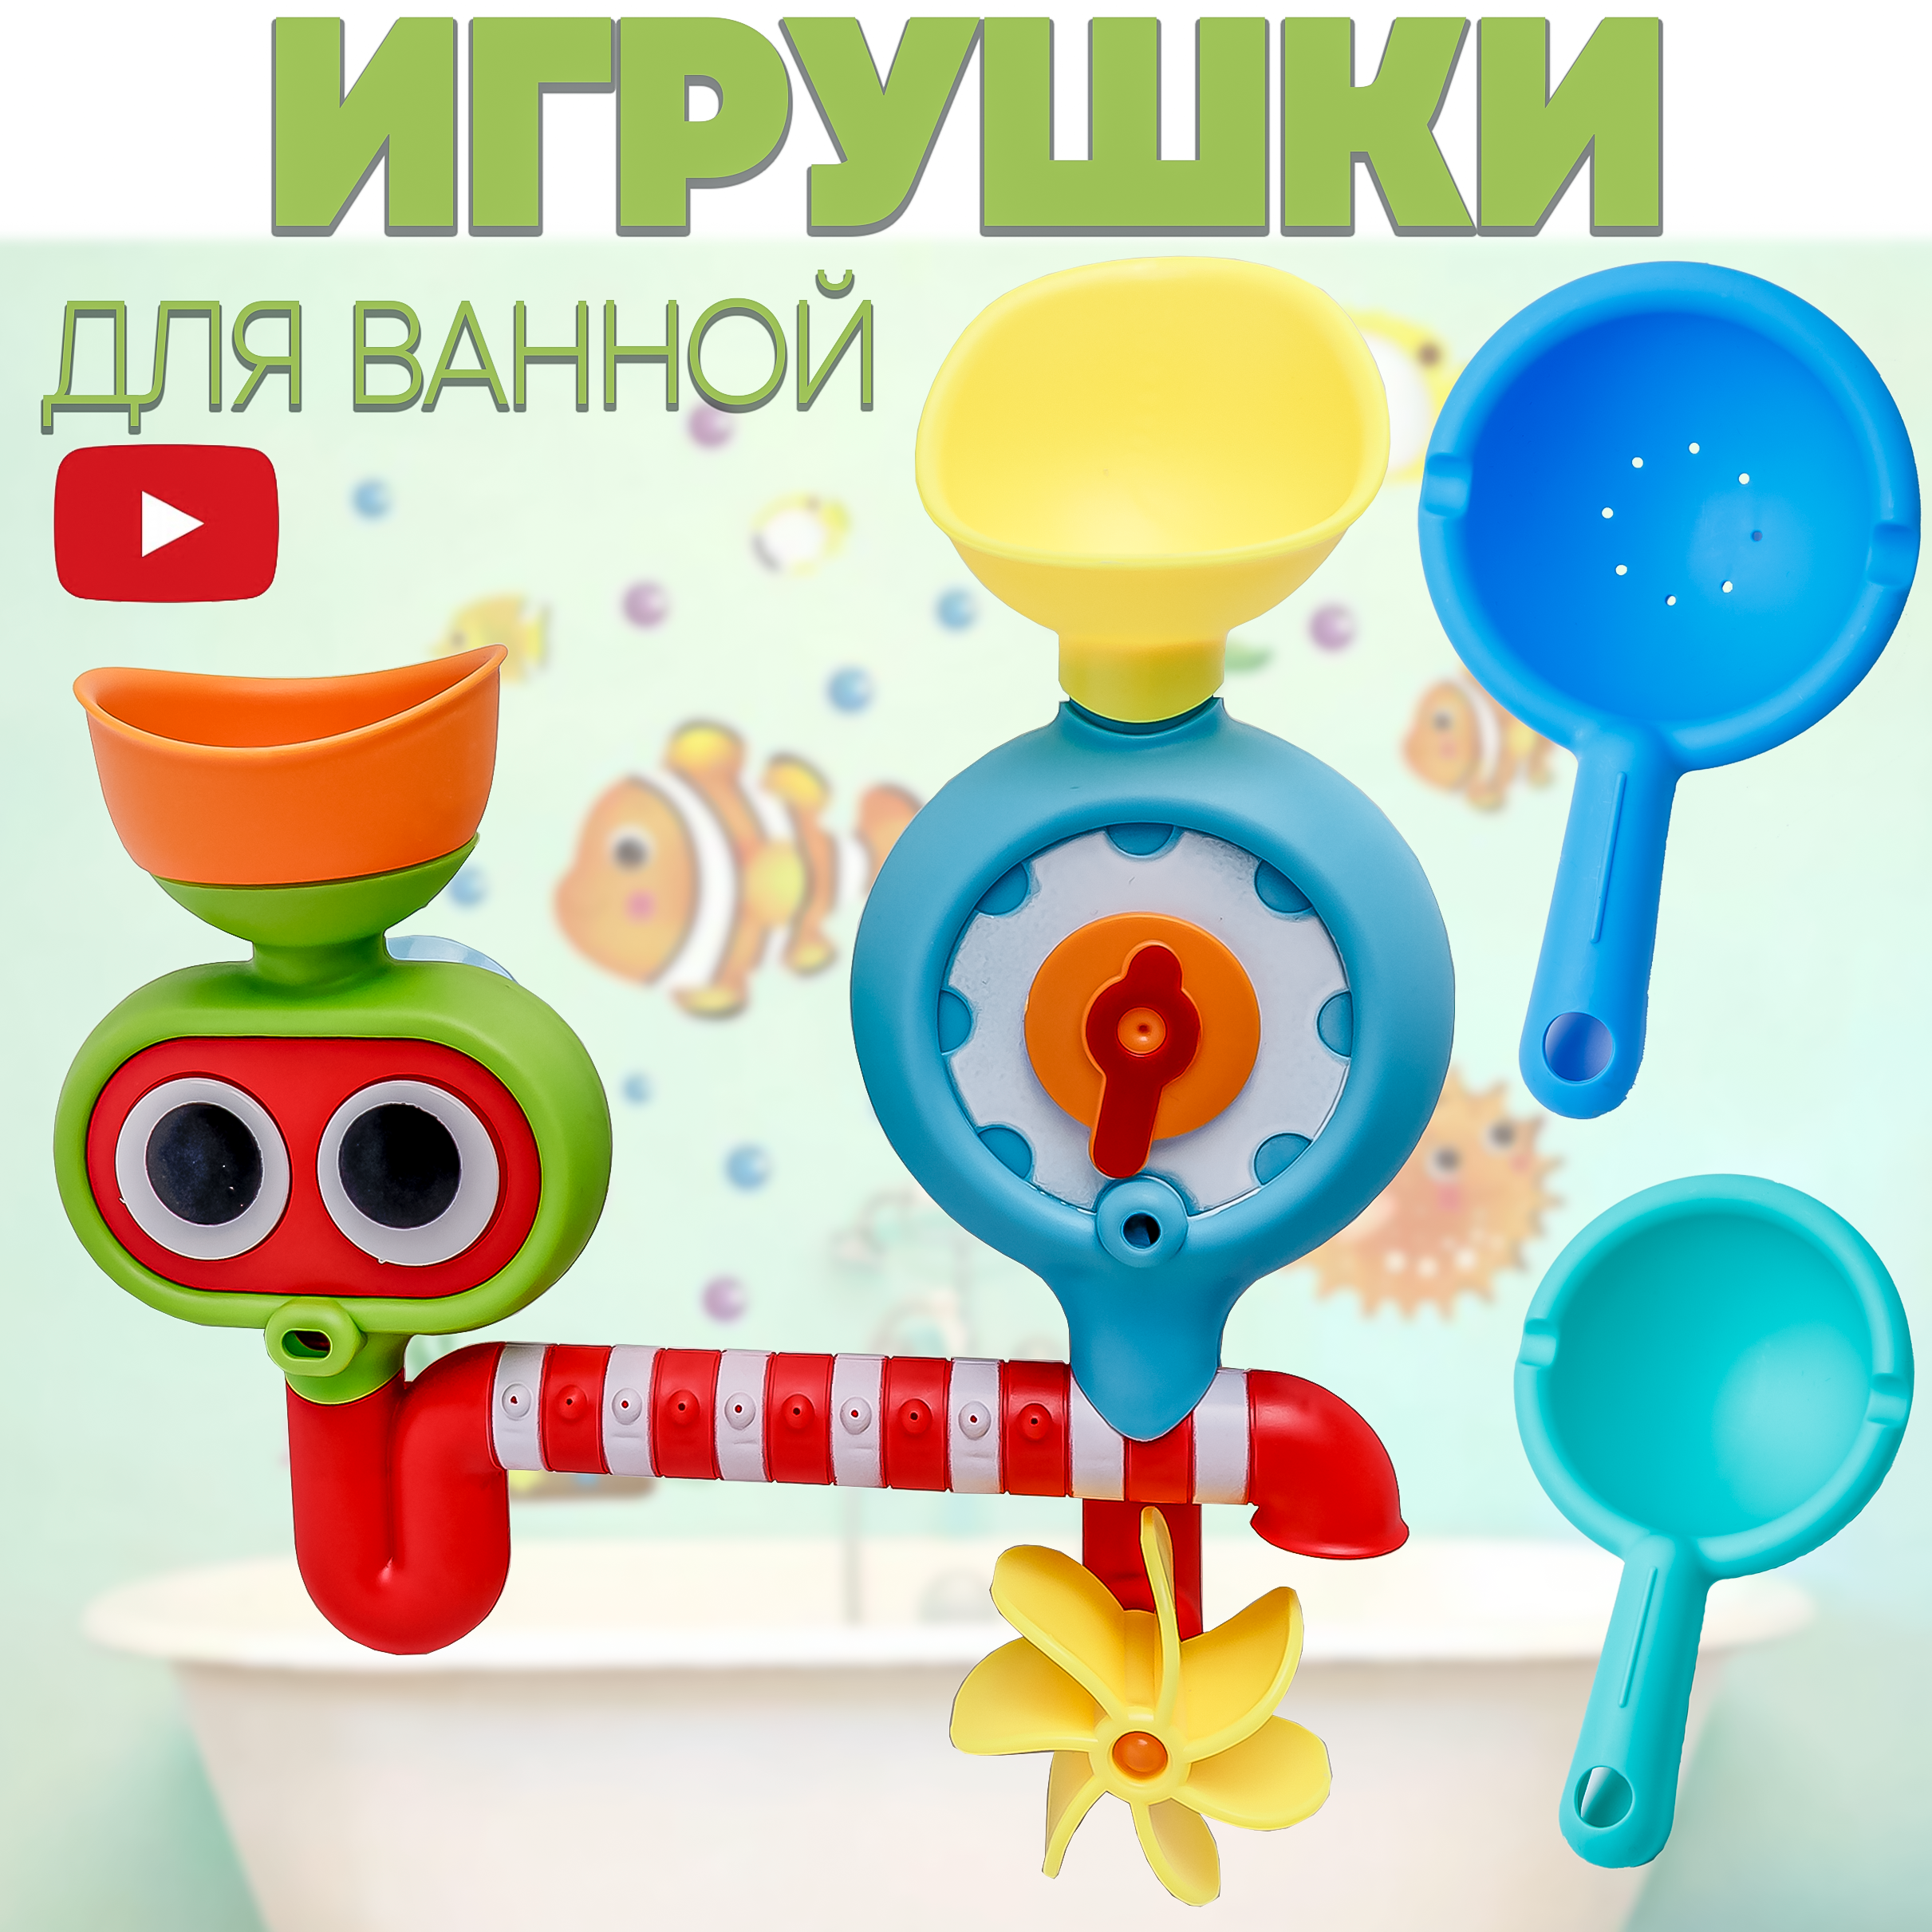 Игрушка для ванной BAZUMI набор на присосках для купания малышей - фото 2